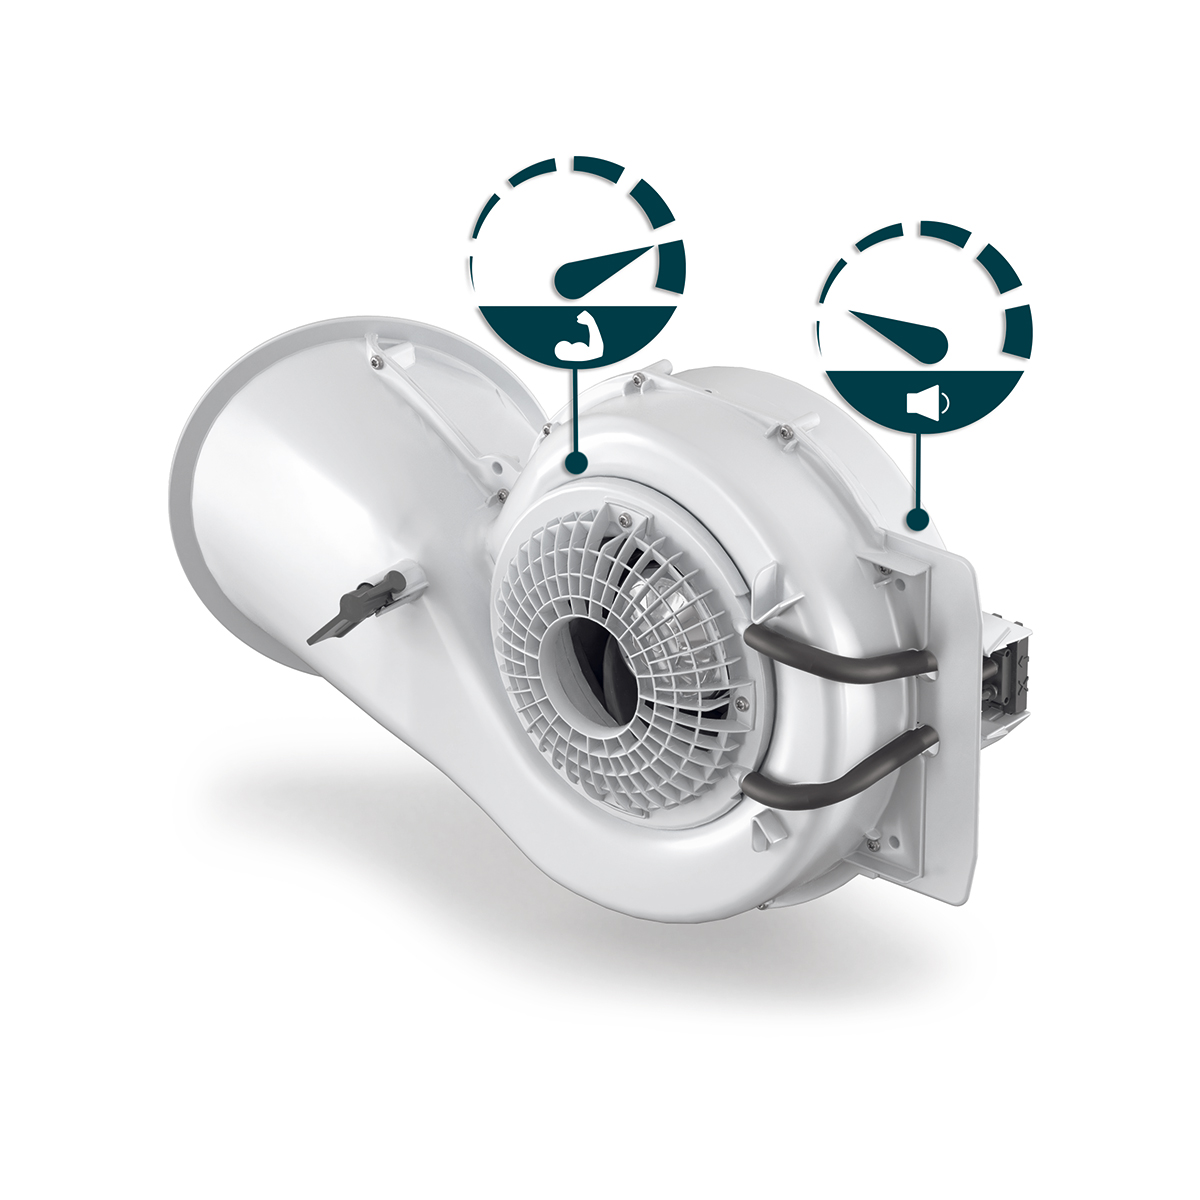 Jednotka Zehnder ComfoAir Flex je opatřena dvěma ventilátory spirálového tvaru pro zajištění tichého provozu, vysokého výkonu a nízké spotřeby energie.